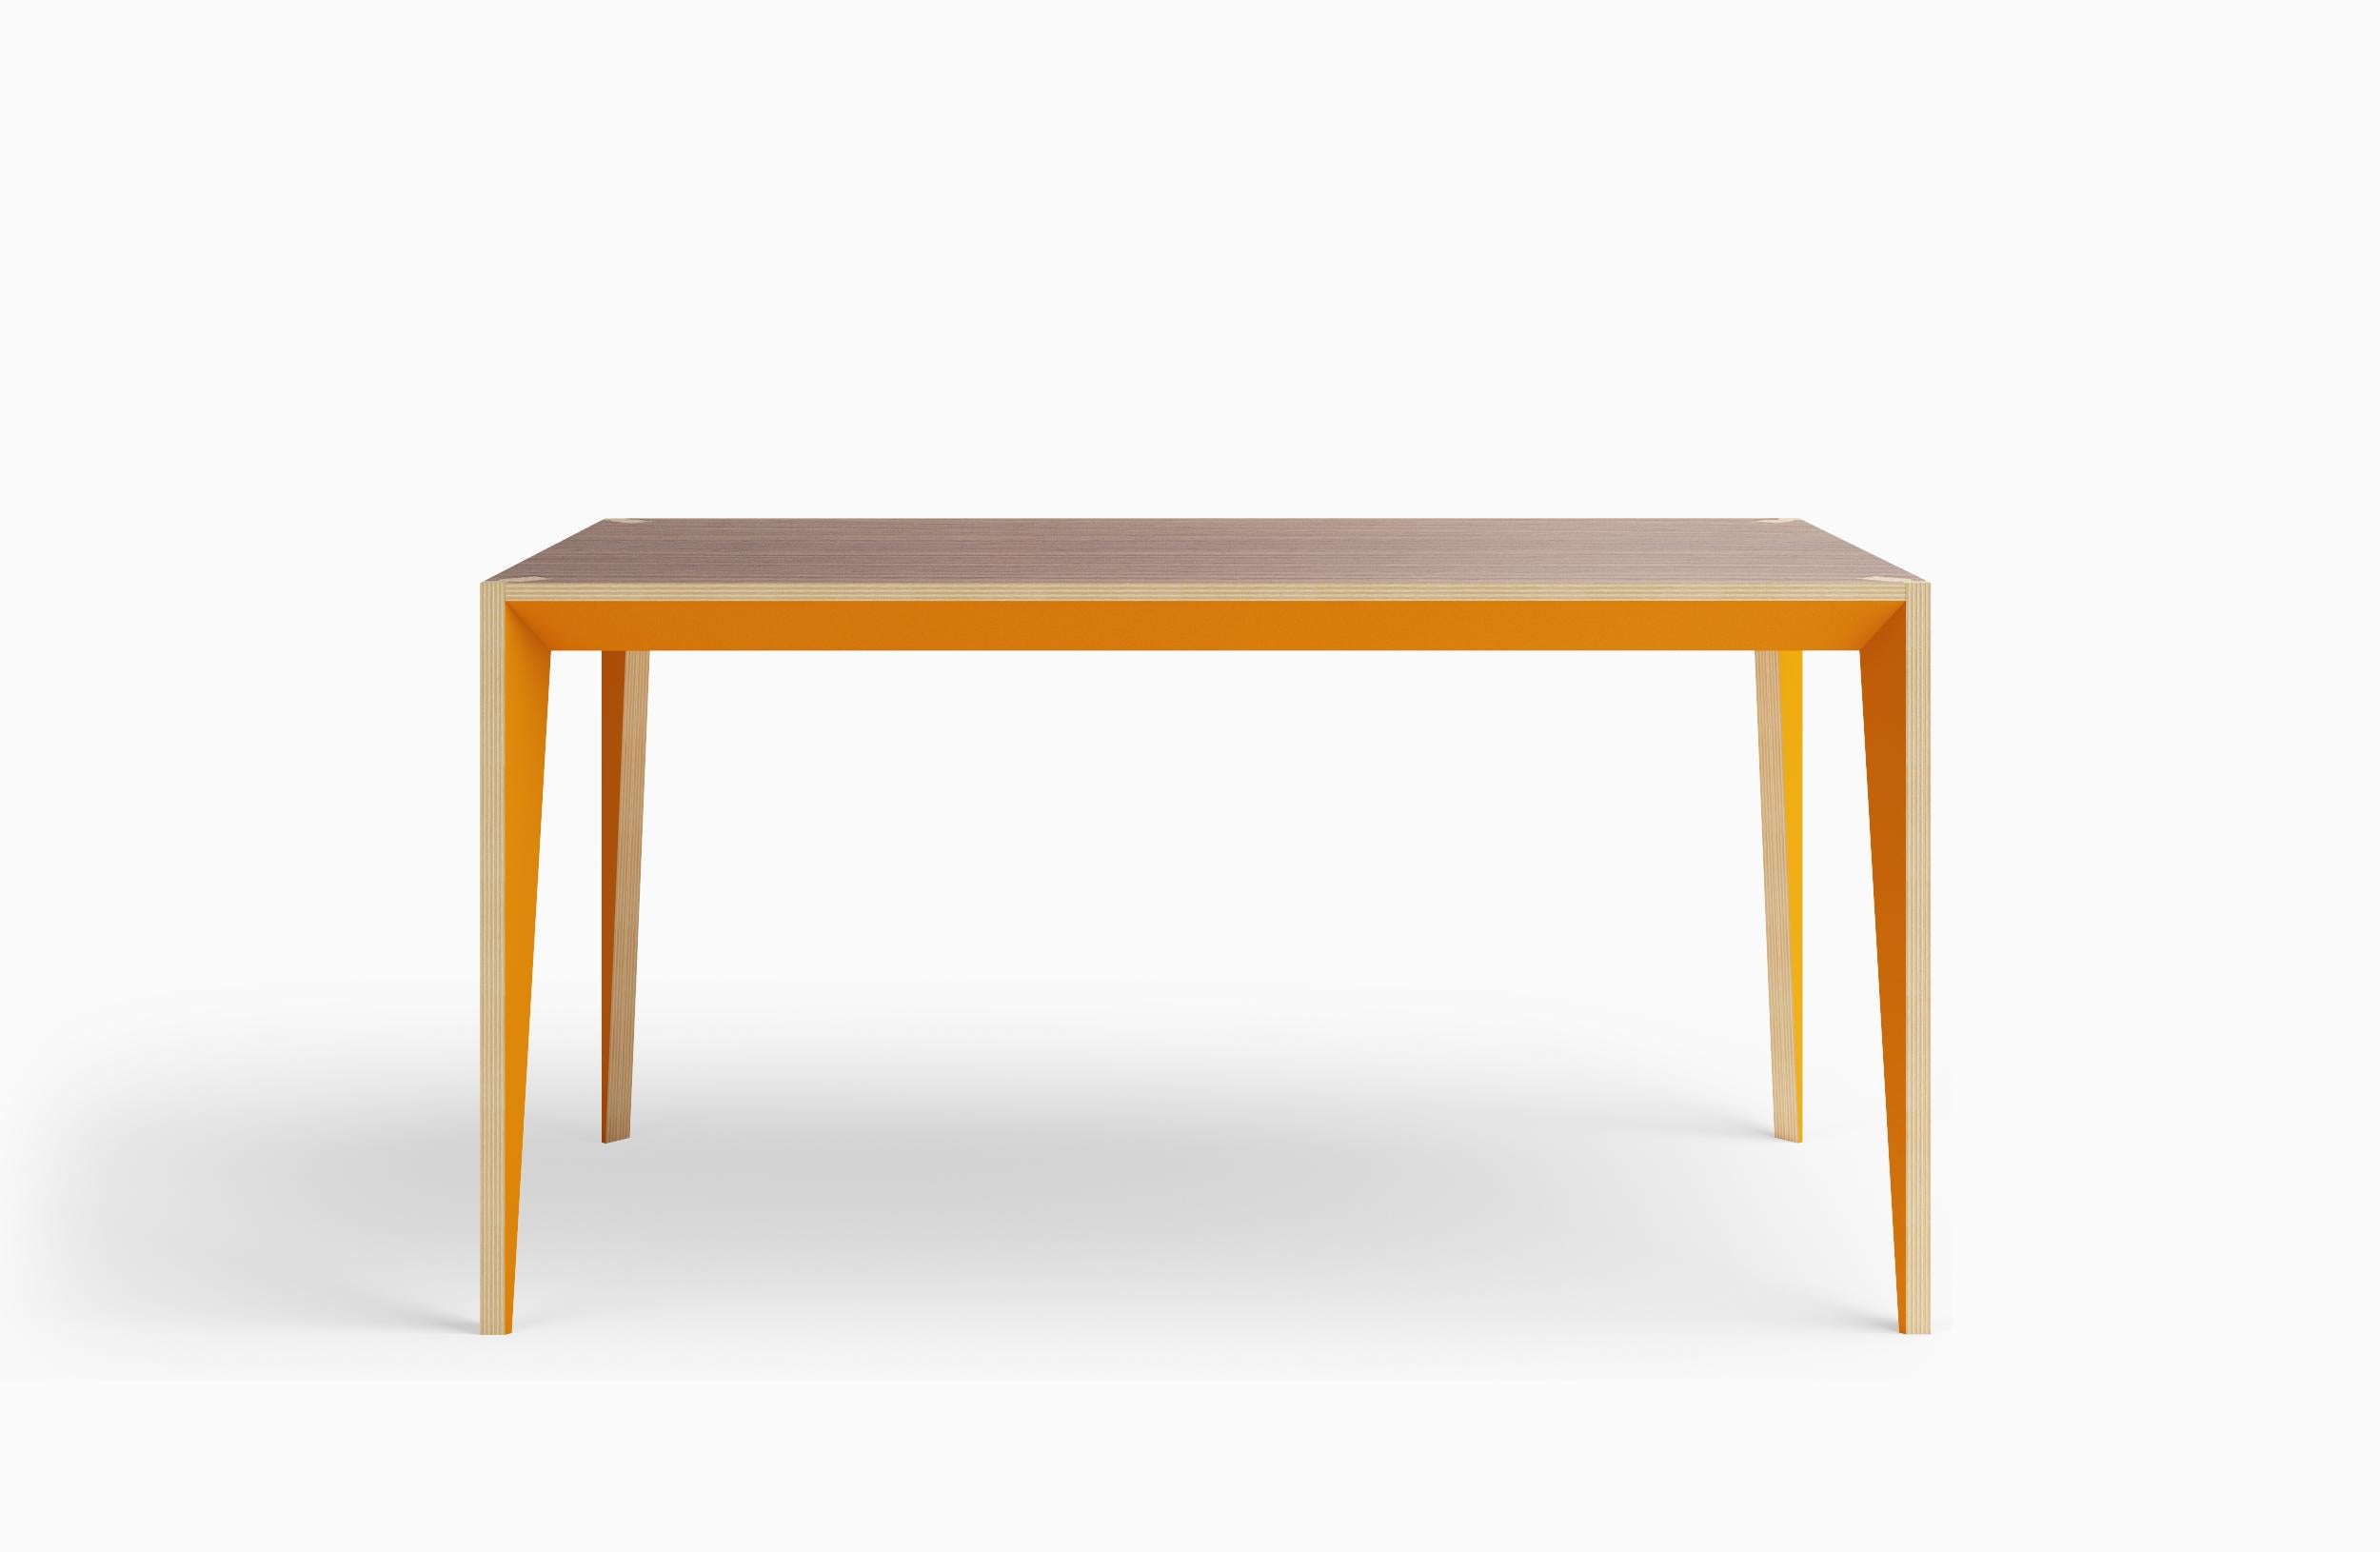 Die facettierte Geometrie des MiMi-Tisches verbindet klare Linien mit warmen Materialien und schafft ein schlankes, anmutiges Profil, das von lackierten Oberflächen unterbrochen wird, die das Licht einfangen. Dieses moderne und elegante Design